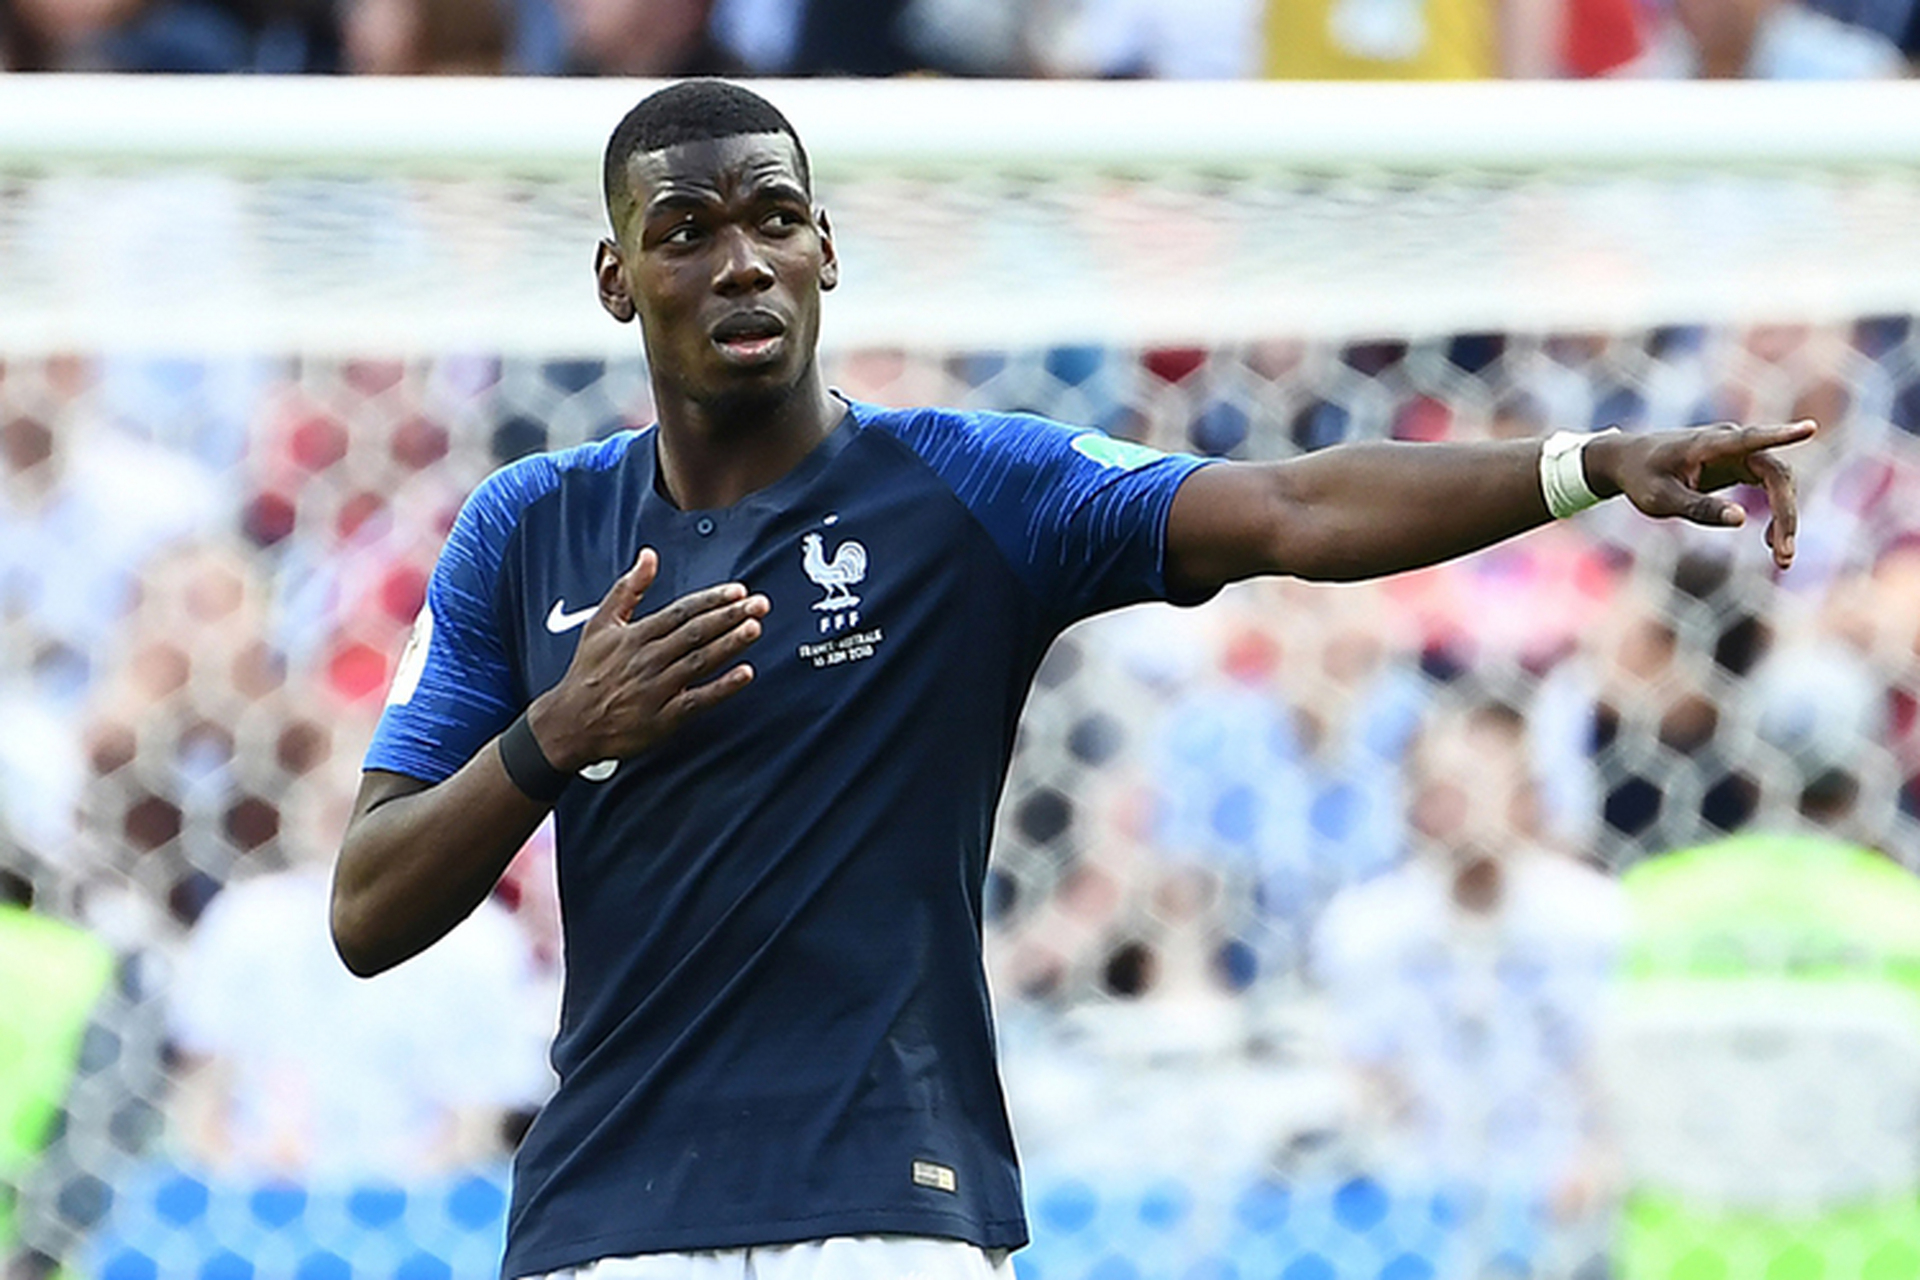 曼联球员博格巴将在今晚的世界杯决赛中代表法国出战,法国队若能夺得